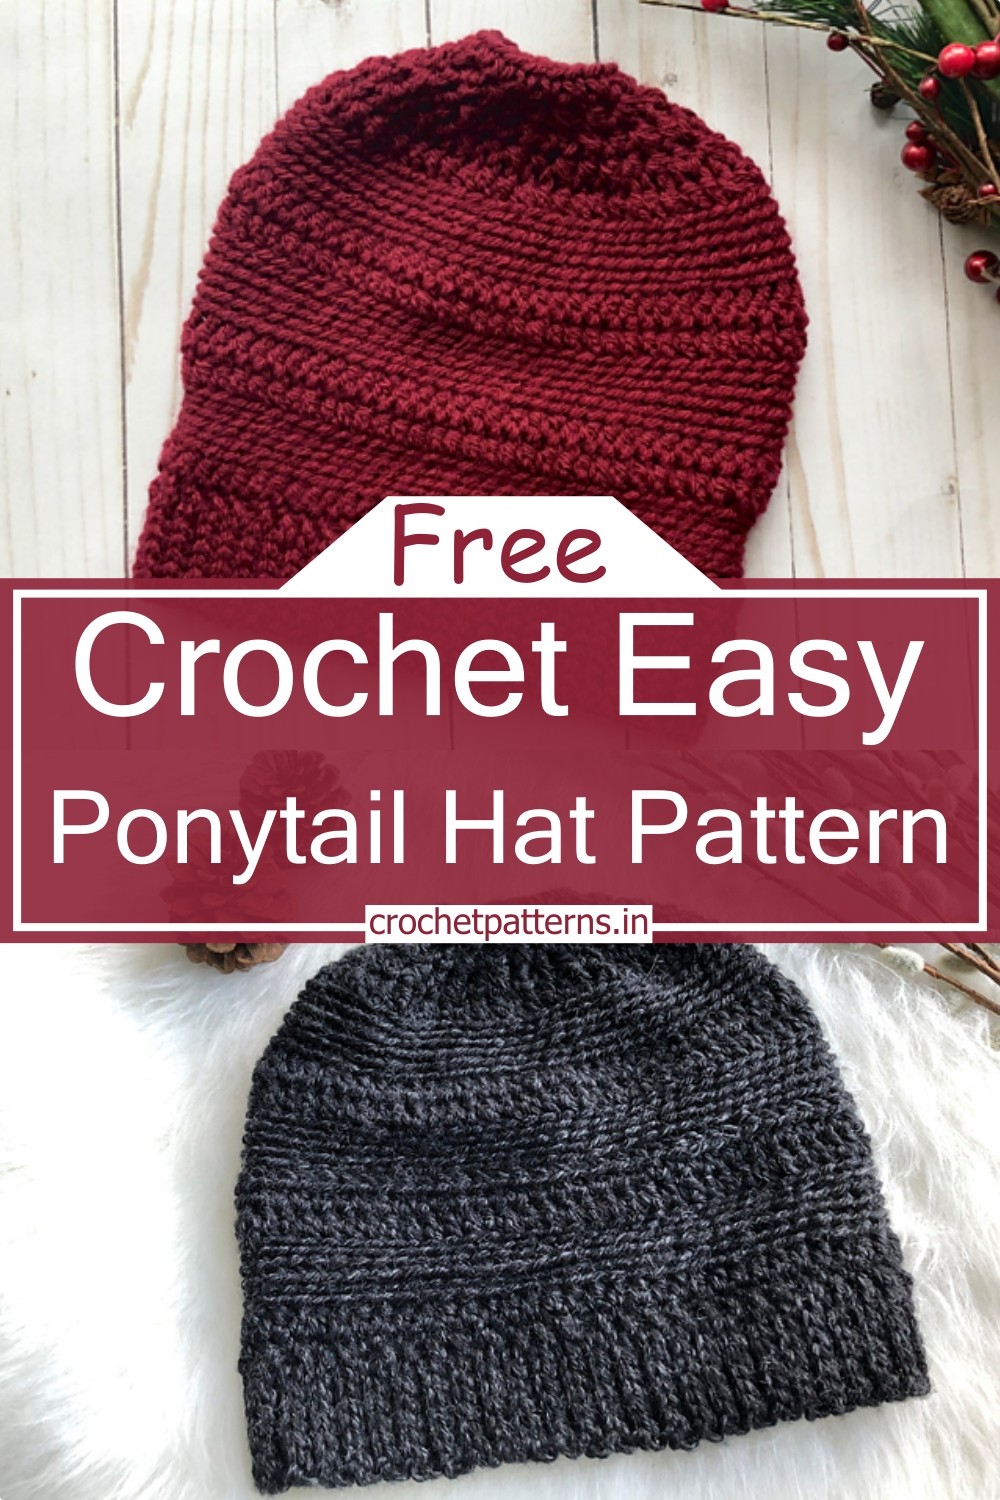 Crochet Easy Ponytail Hat Pattern